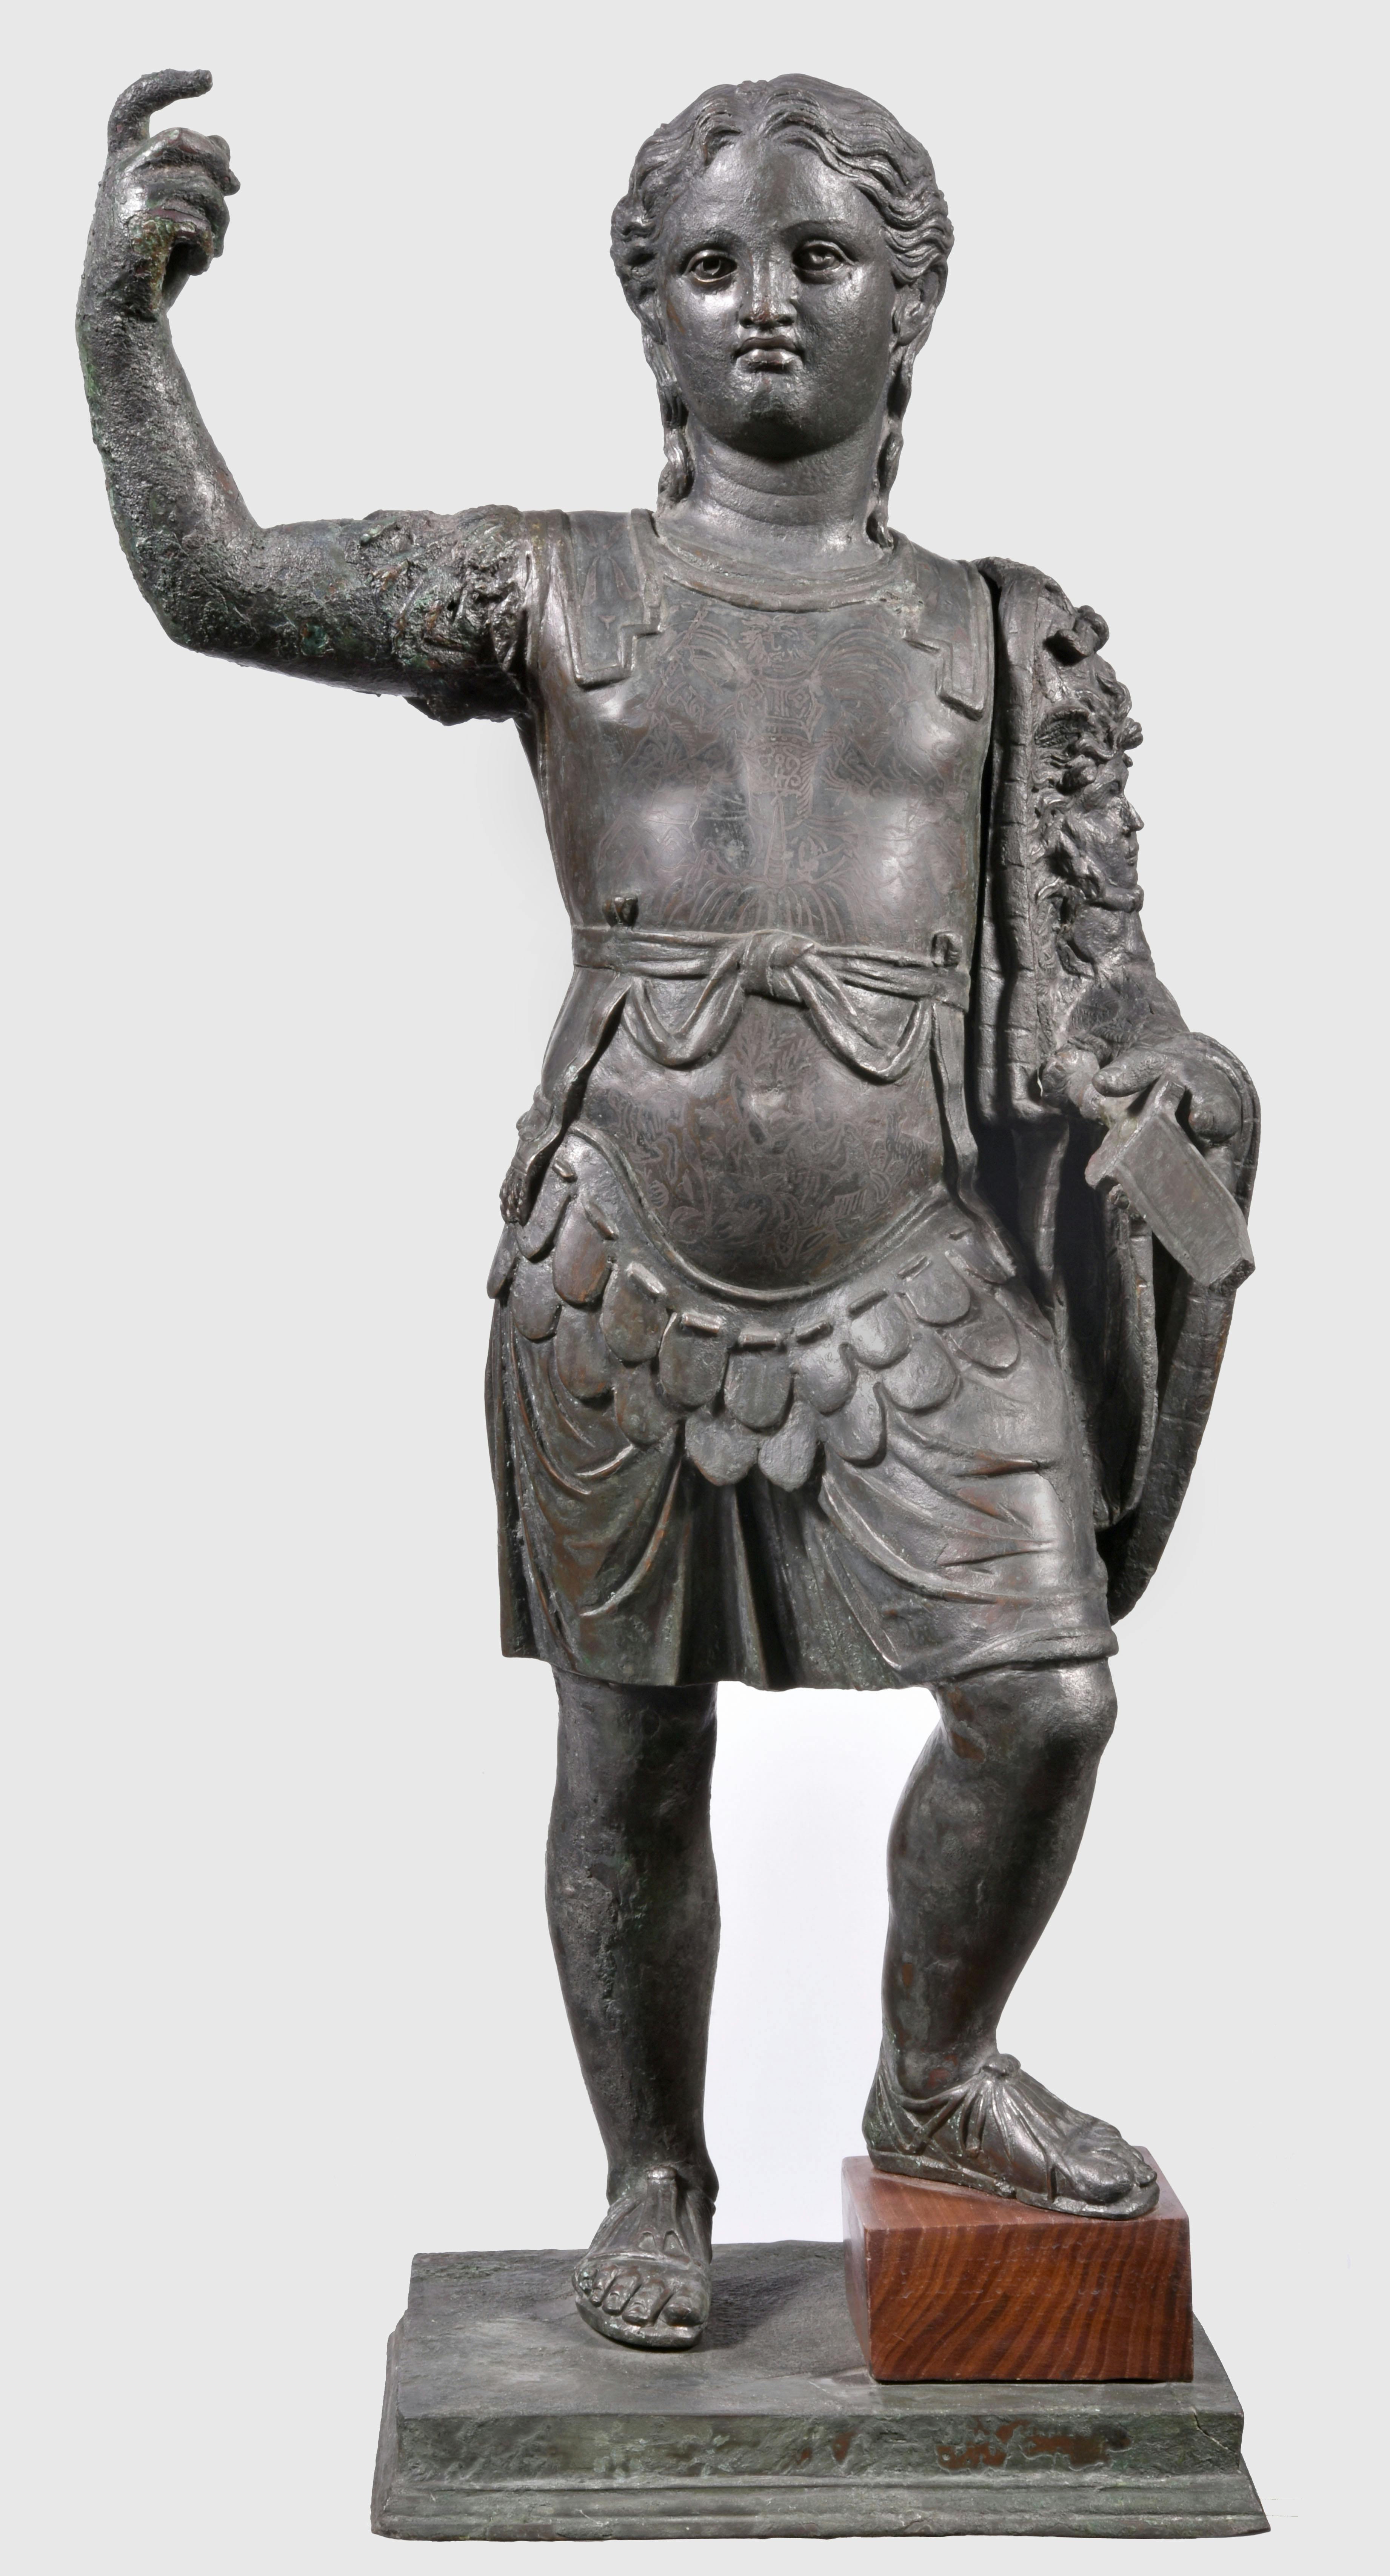 Der junge Alexander der Große / Alexander the Great as a young man